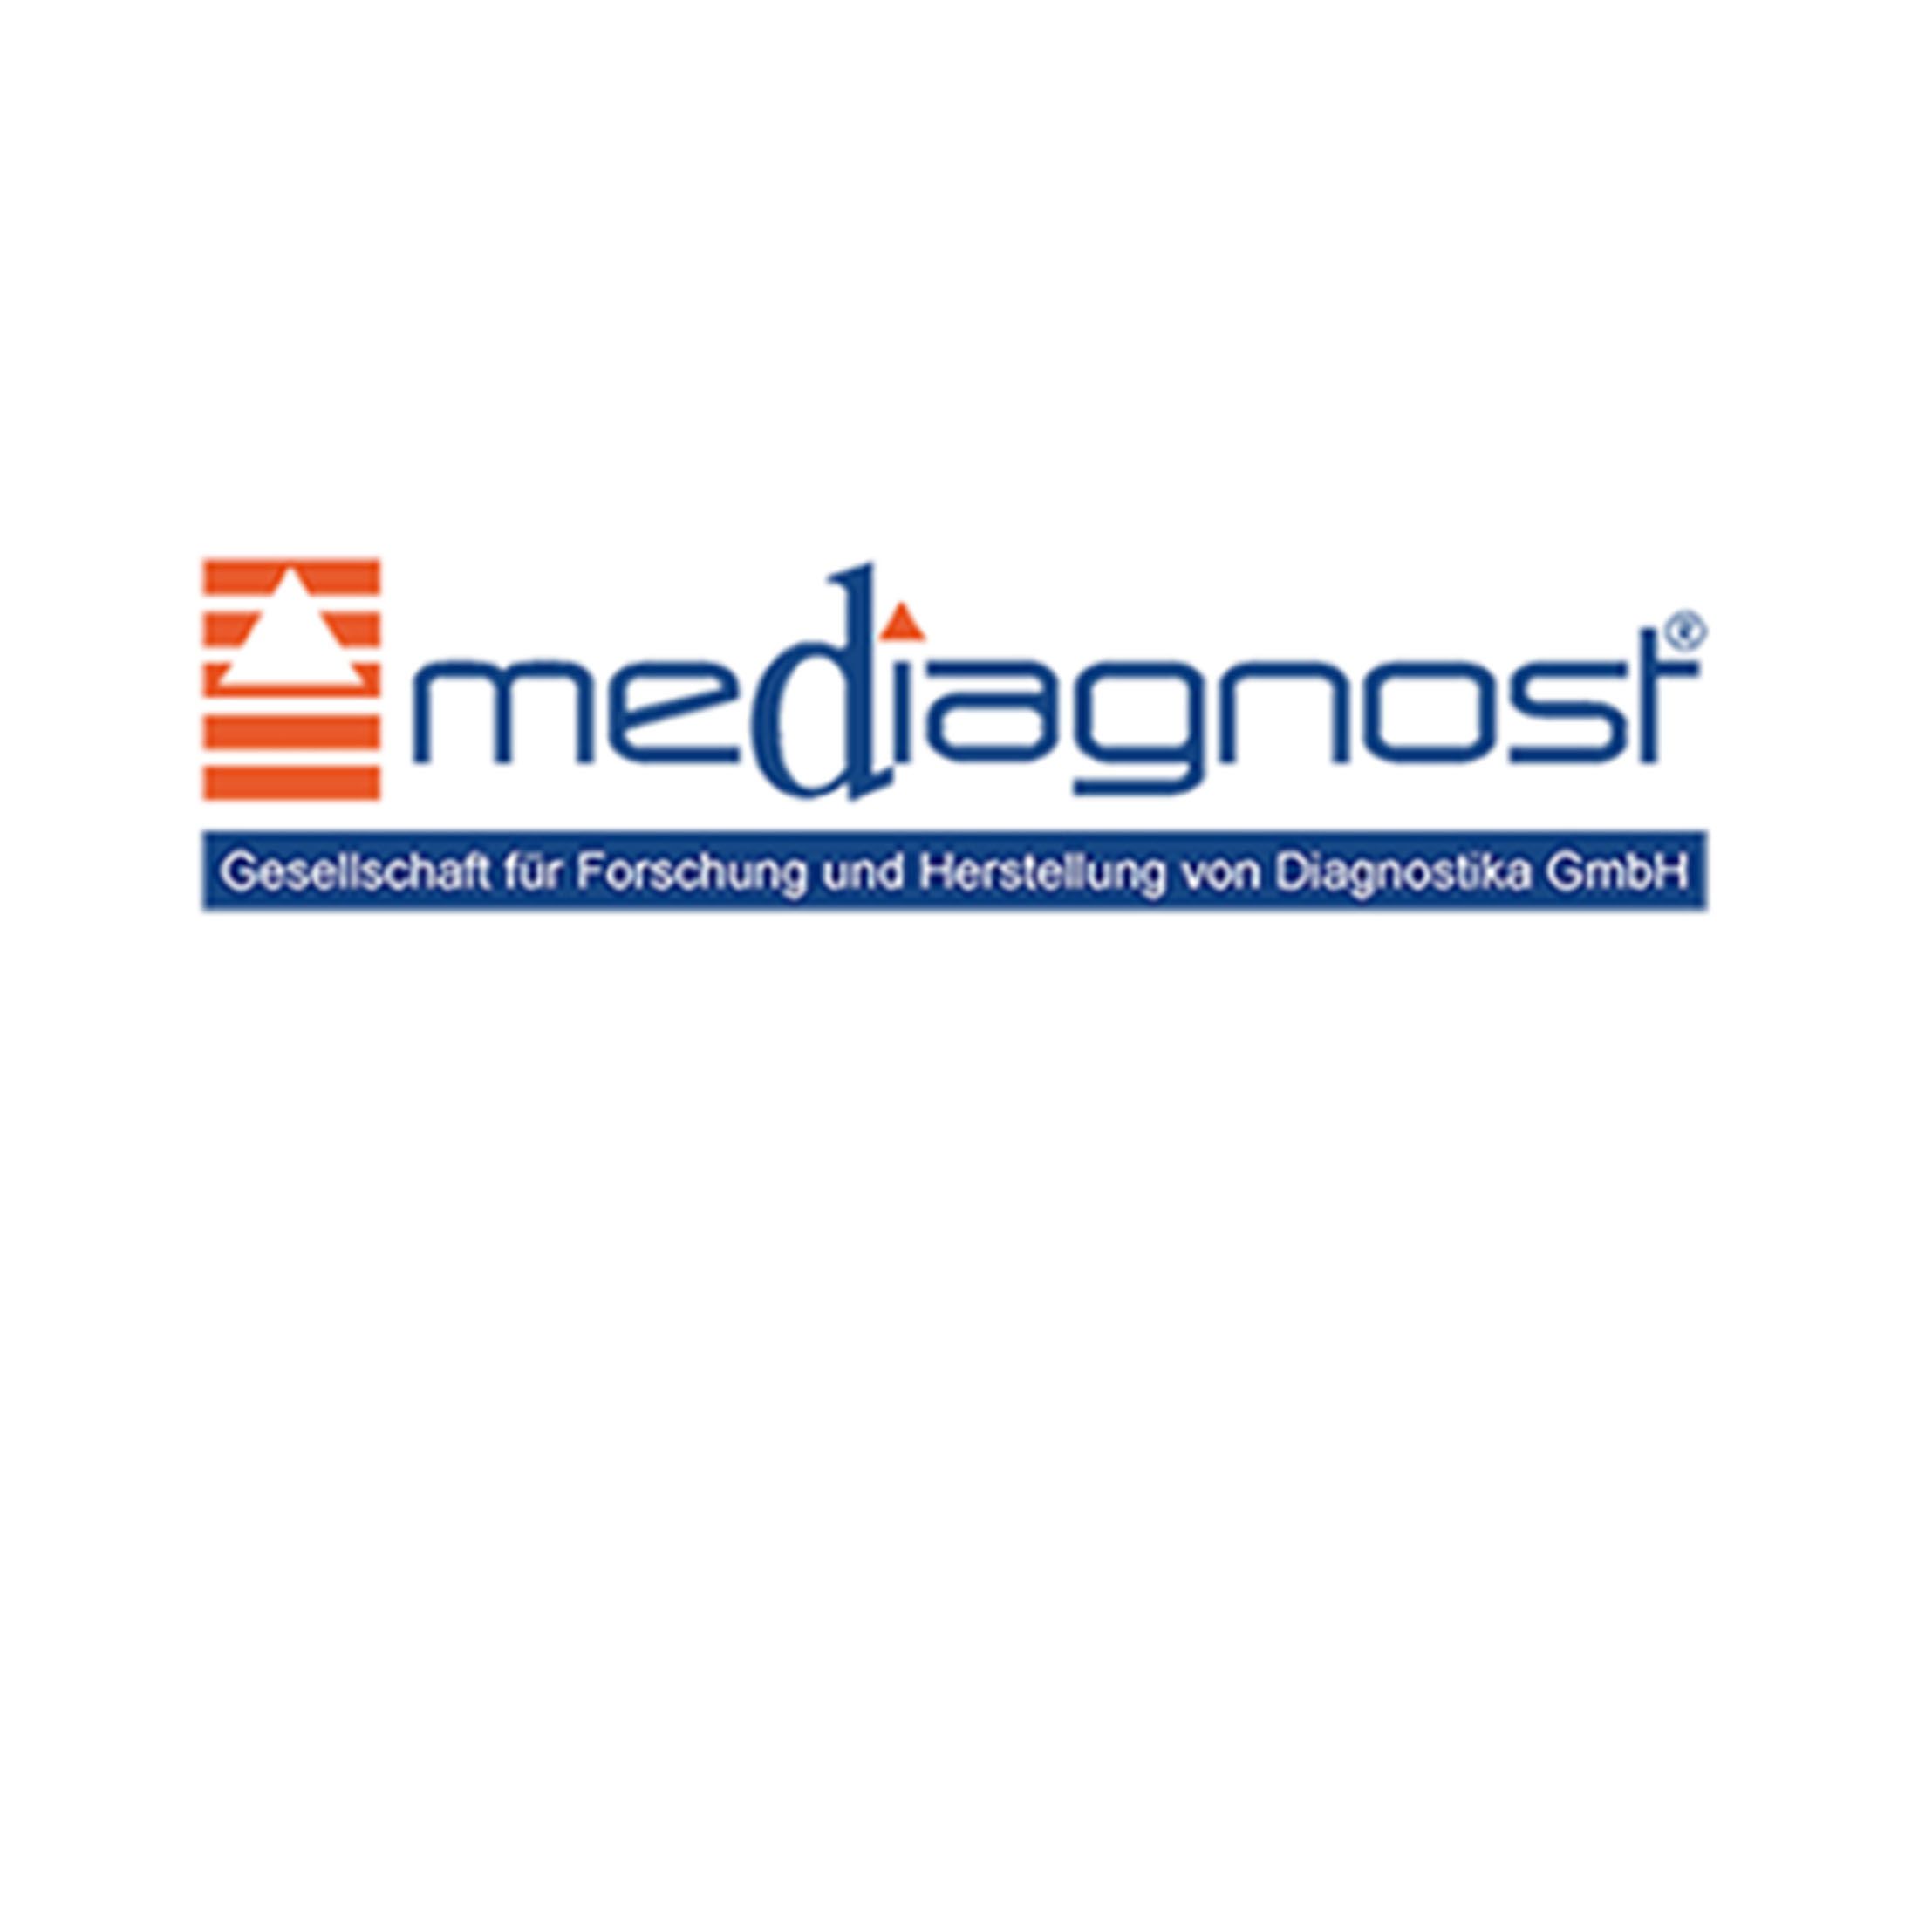 Mediagnost诊断测试系统的研究和制造